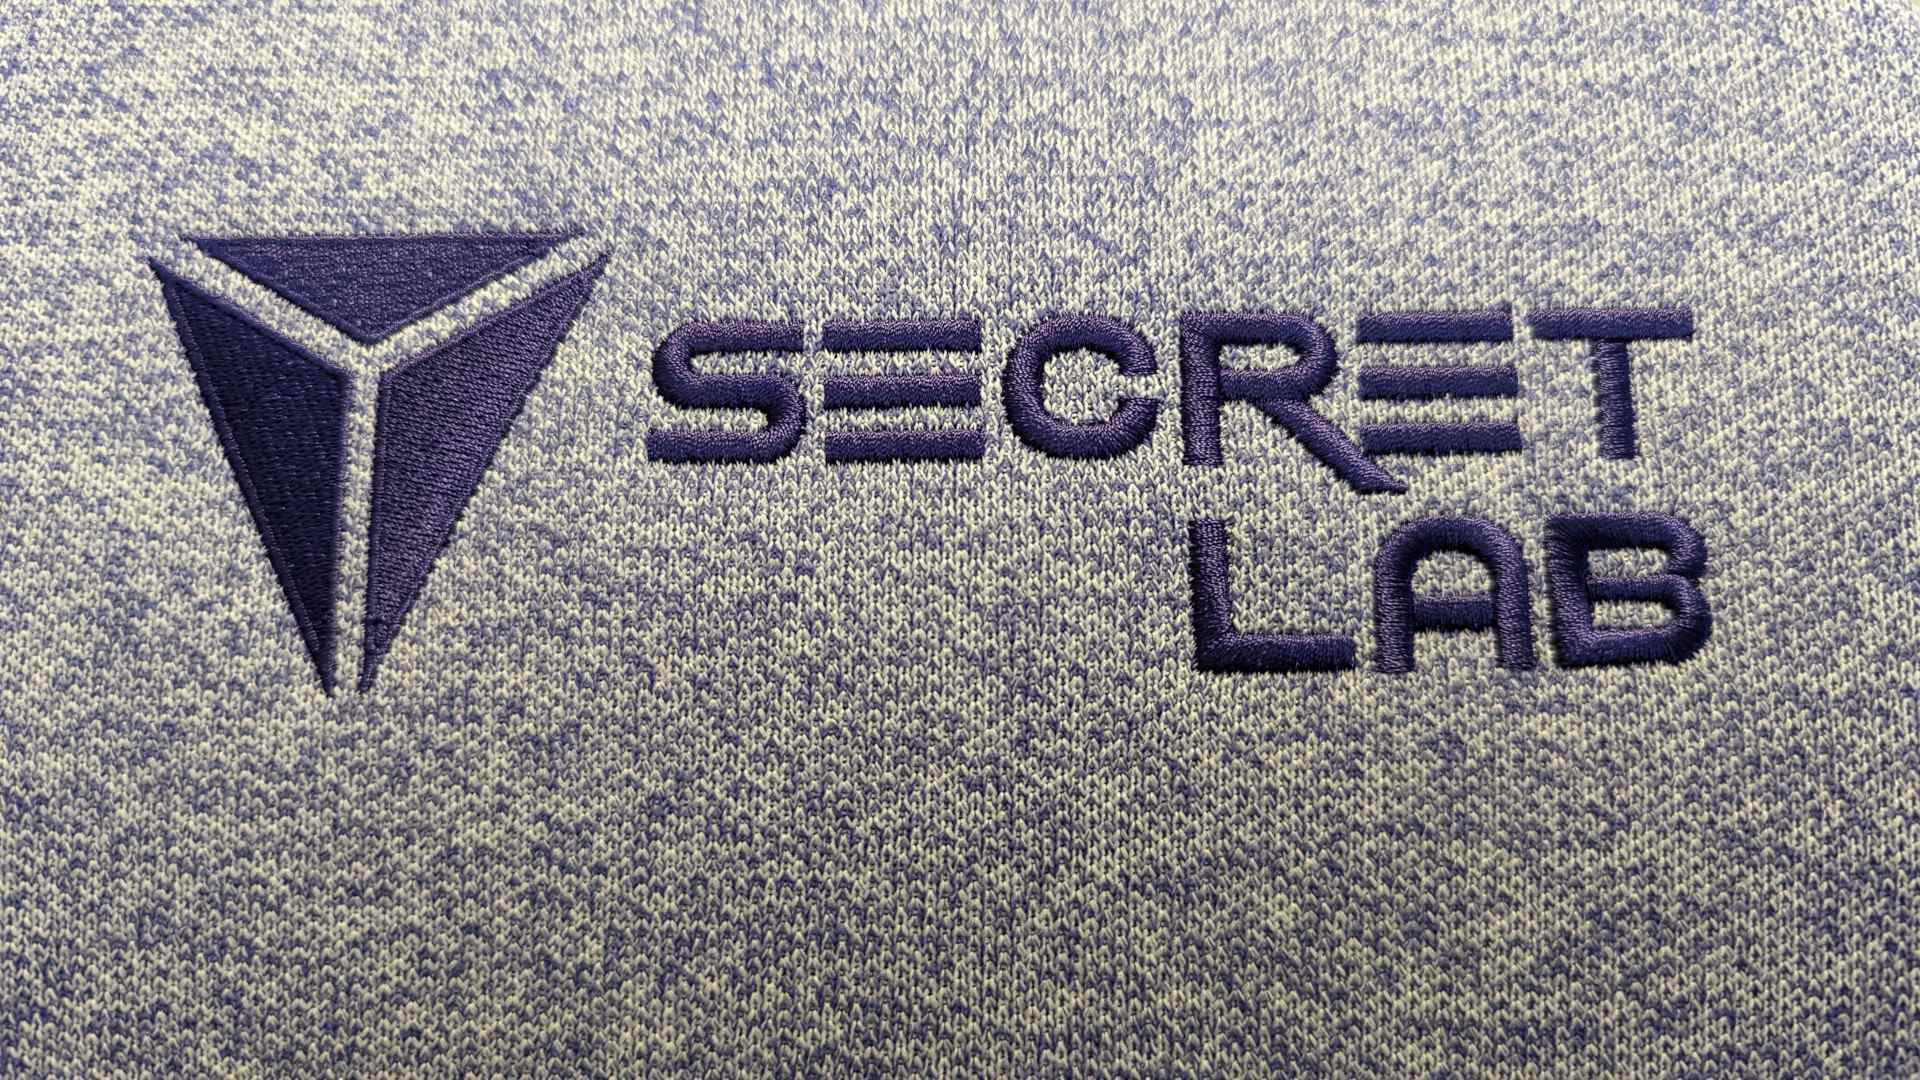 Le logo Secretlab, cousu en violet sur un ton plus clair